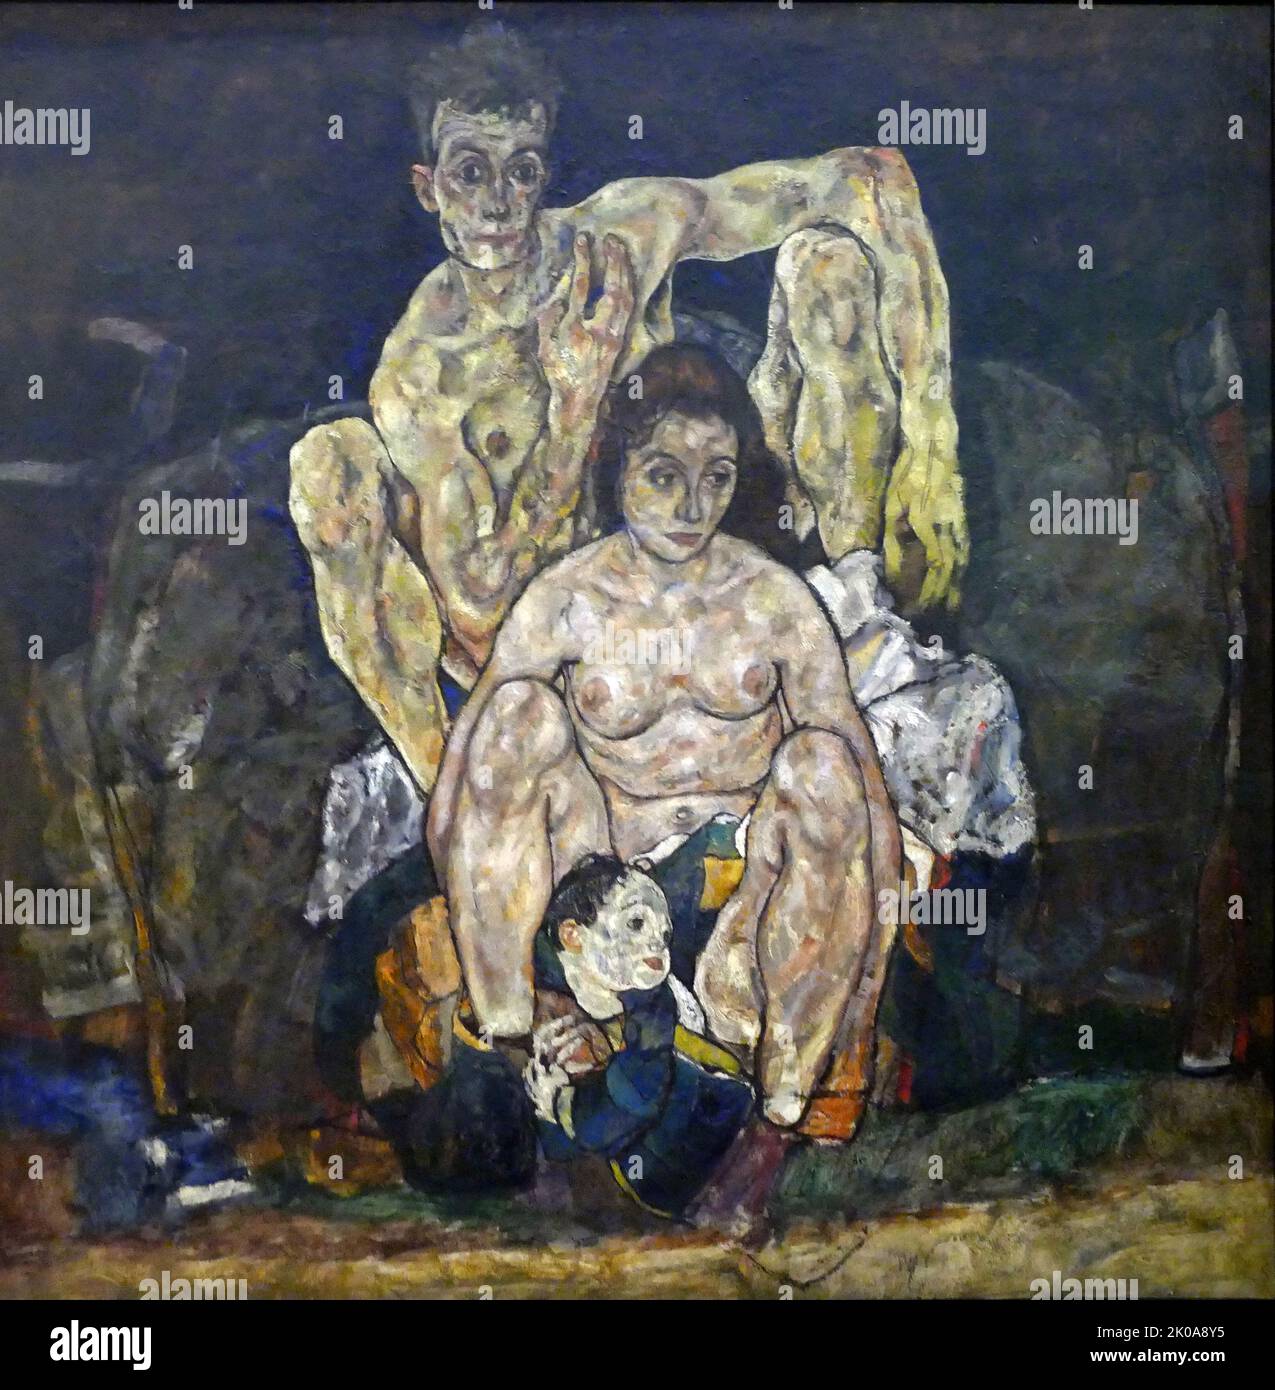 Die Familie, 1918, Öl auf Leinwand von Ego Schiele. Egon Leo Adolf Ludwig Schiele (12. Juni 1890 - 31. Oktober 1918) war ein österreichischer expressionistischer Maler. Schiele, ein Protege von Gustav Klimt, war ein bedeutender figurativer Maler des frühen 20.. Jahrhunderts Stockfoto